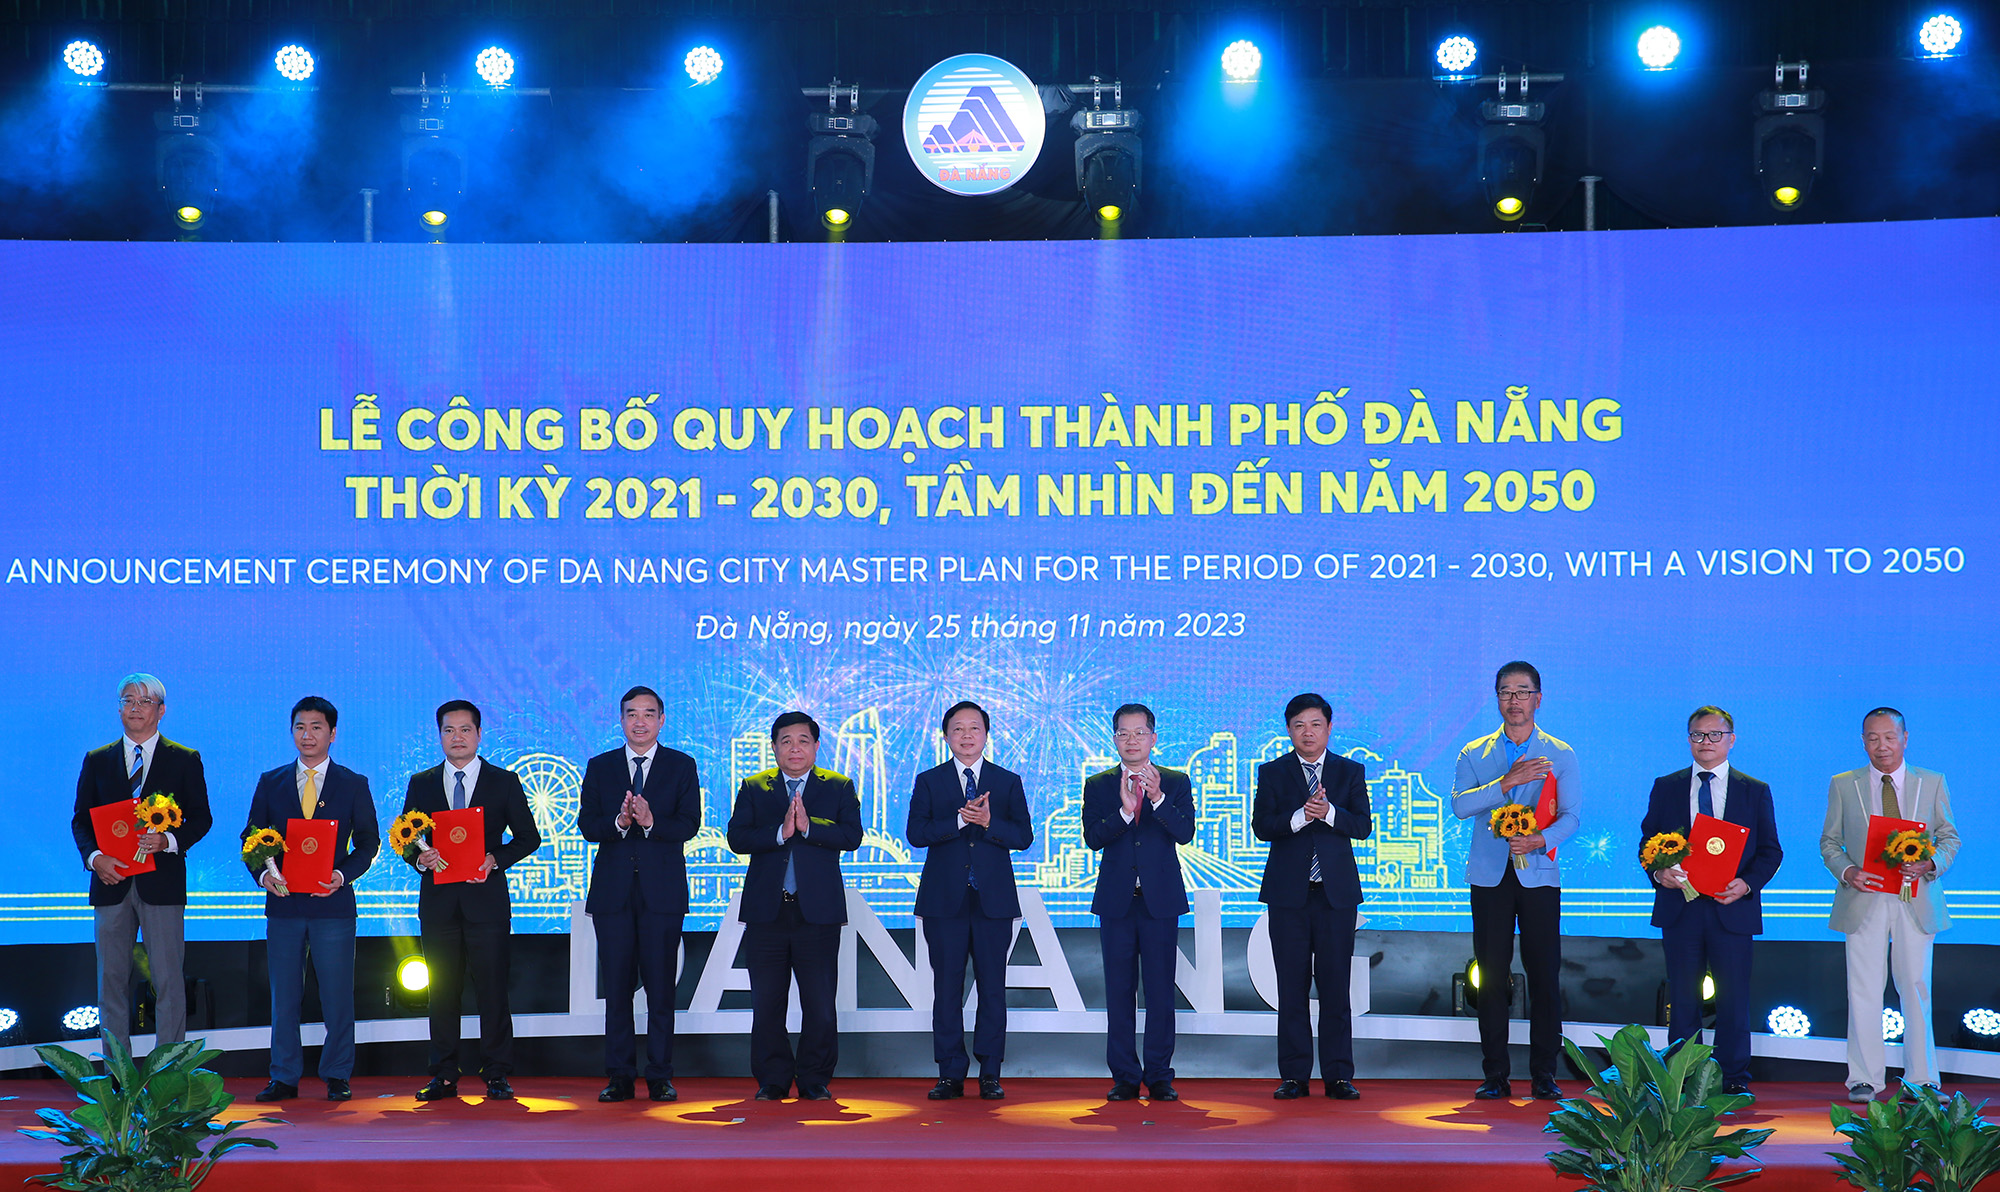 Phó Thủ tướng Trần Hồng Hà, Bộ trưởng Bộ Kế hoạch và Đầu tư Nguyễn Chí Dũng cùng lãnh đạo thành phố trao giấy chứng nhận đầu tư cho các doanh nghiệp, nhà đầu tư tại Lễ công bố Quy hoạch. Ảnh: VGP/Minh Khôi